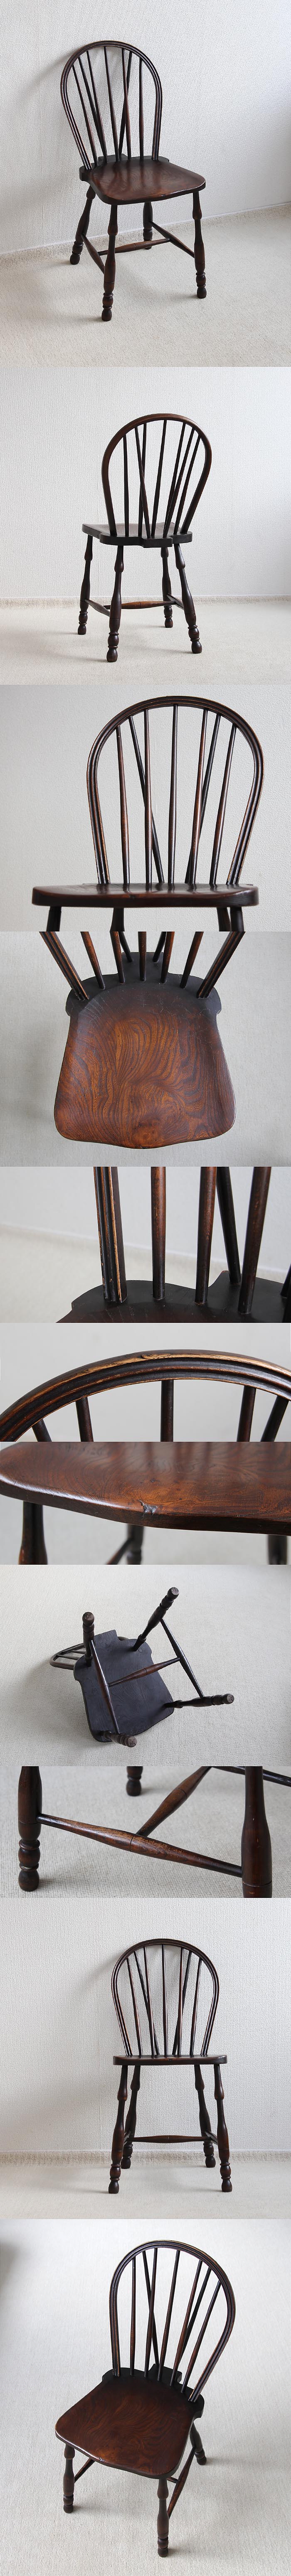 イギリス アンティーク キッチンチェア 木製椅子 ウィンザー 無垢材 家具「ボウバックチェア」V-681